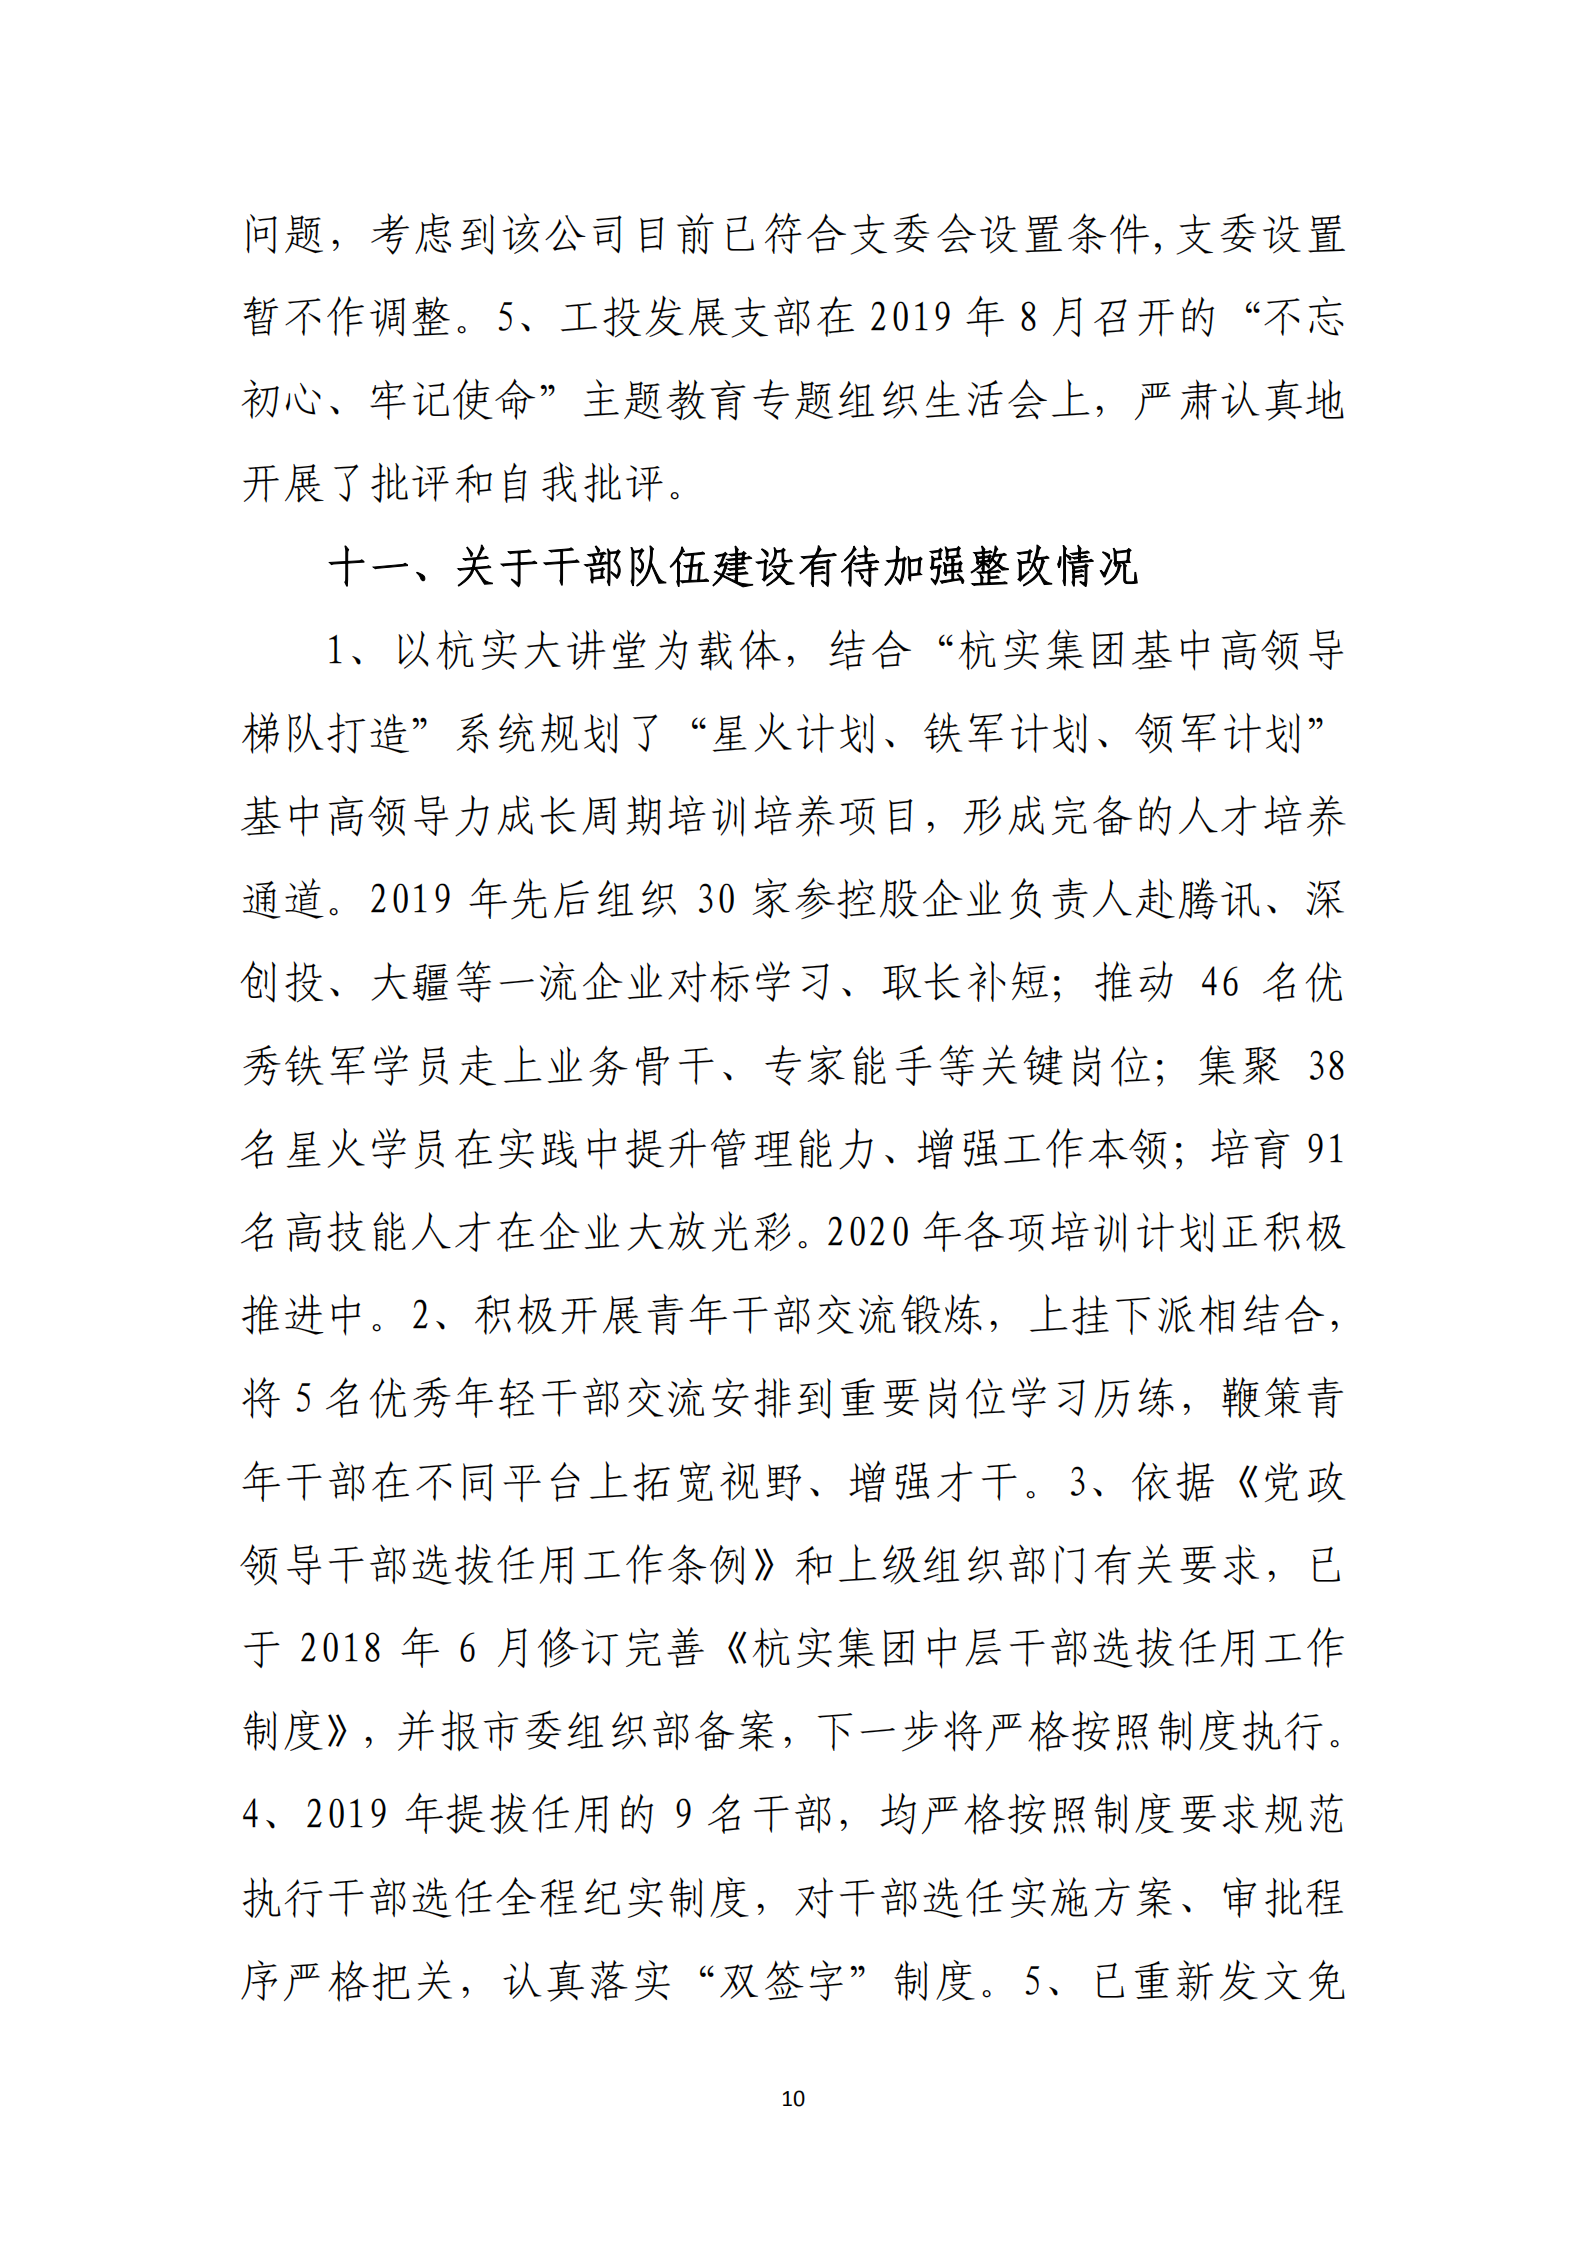 【体育365官方网站】中国有限公司党委关于巡察整改情况的通报_09.png